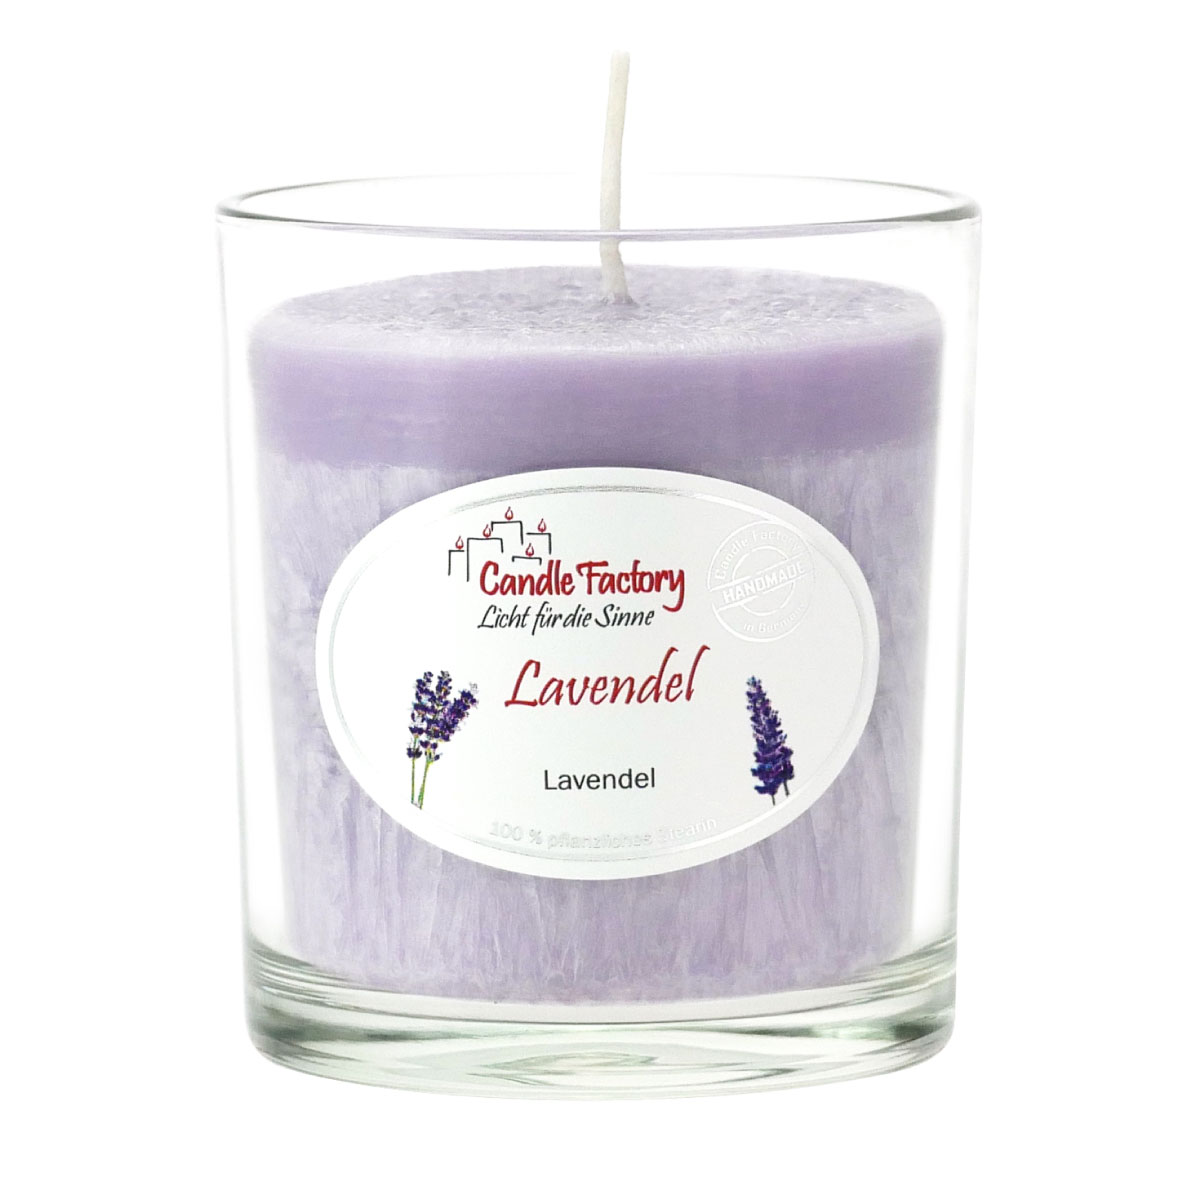 Lavendel - Party Light Duftkerze von Candle Factory